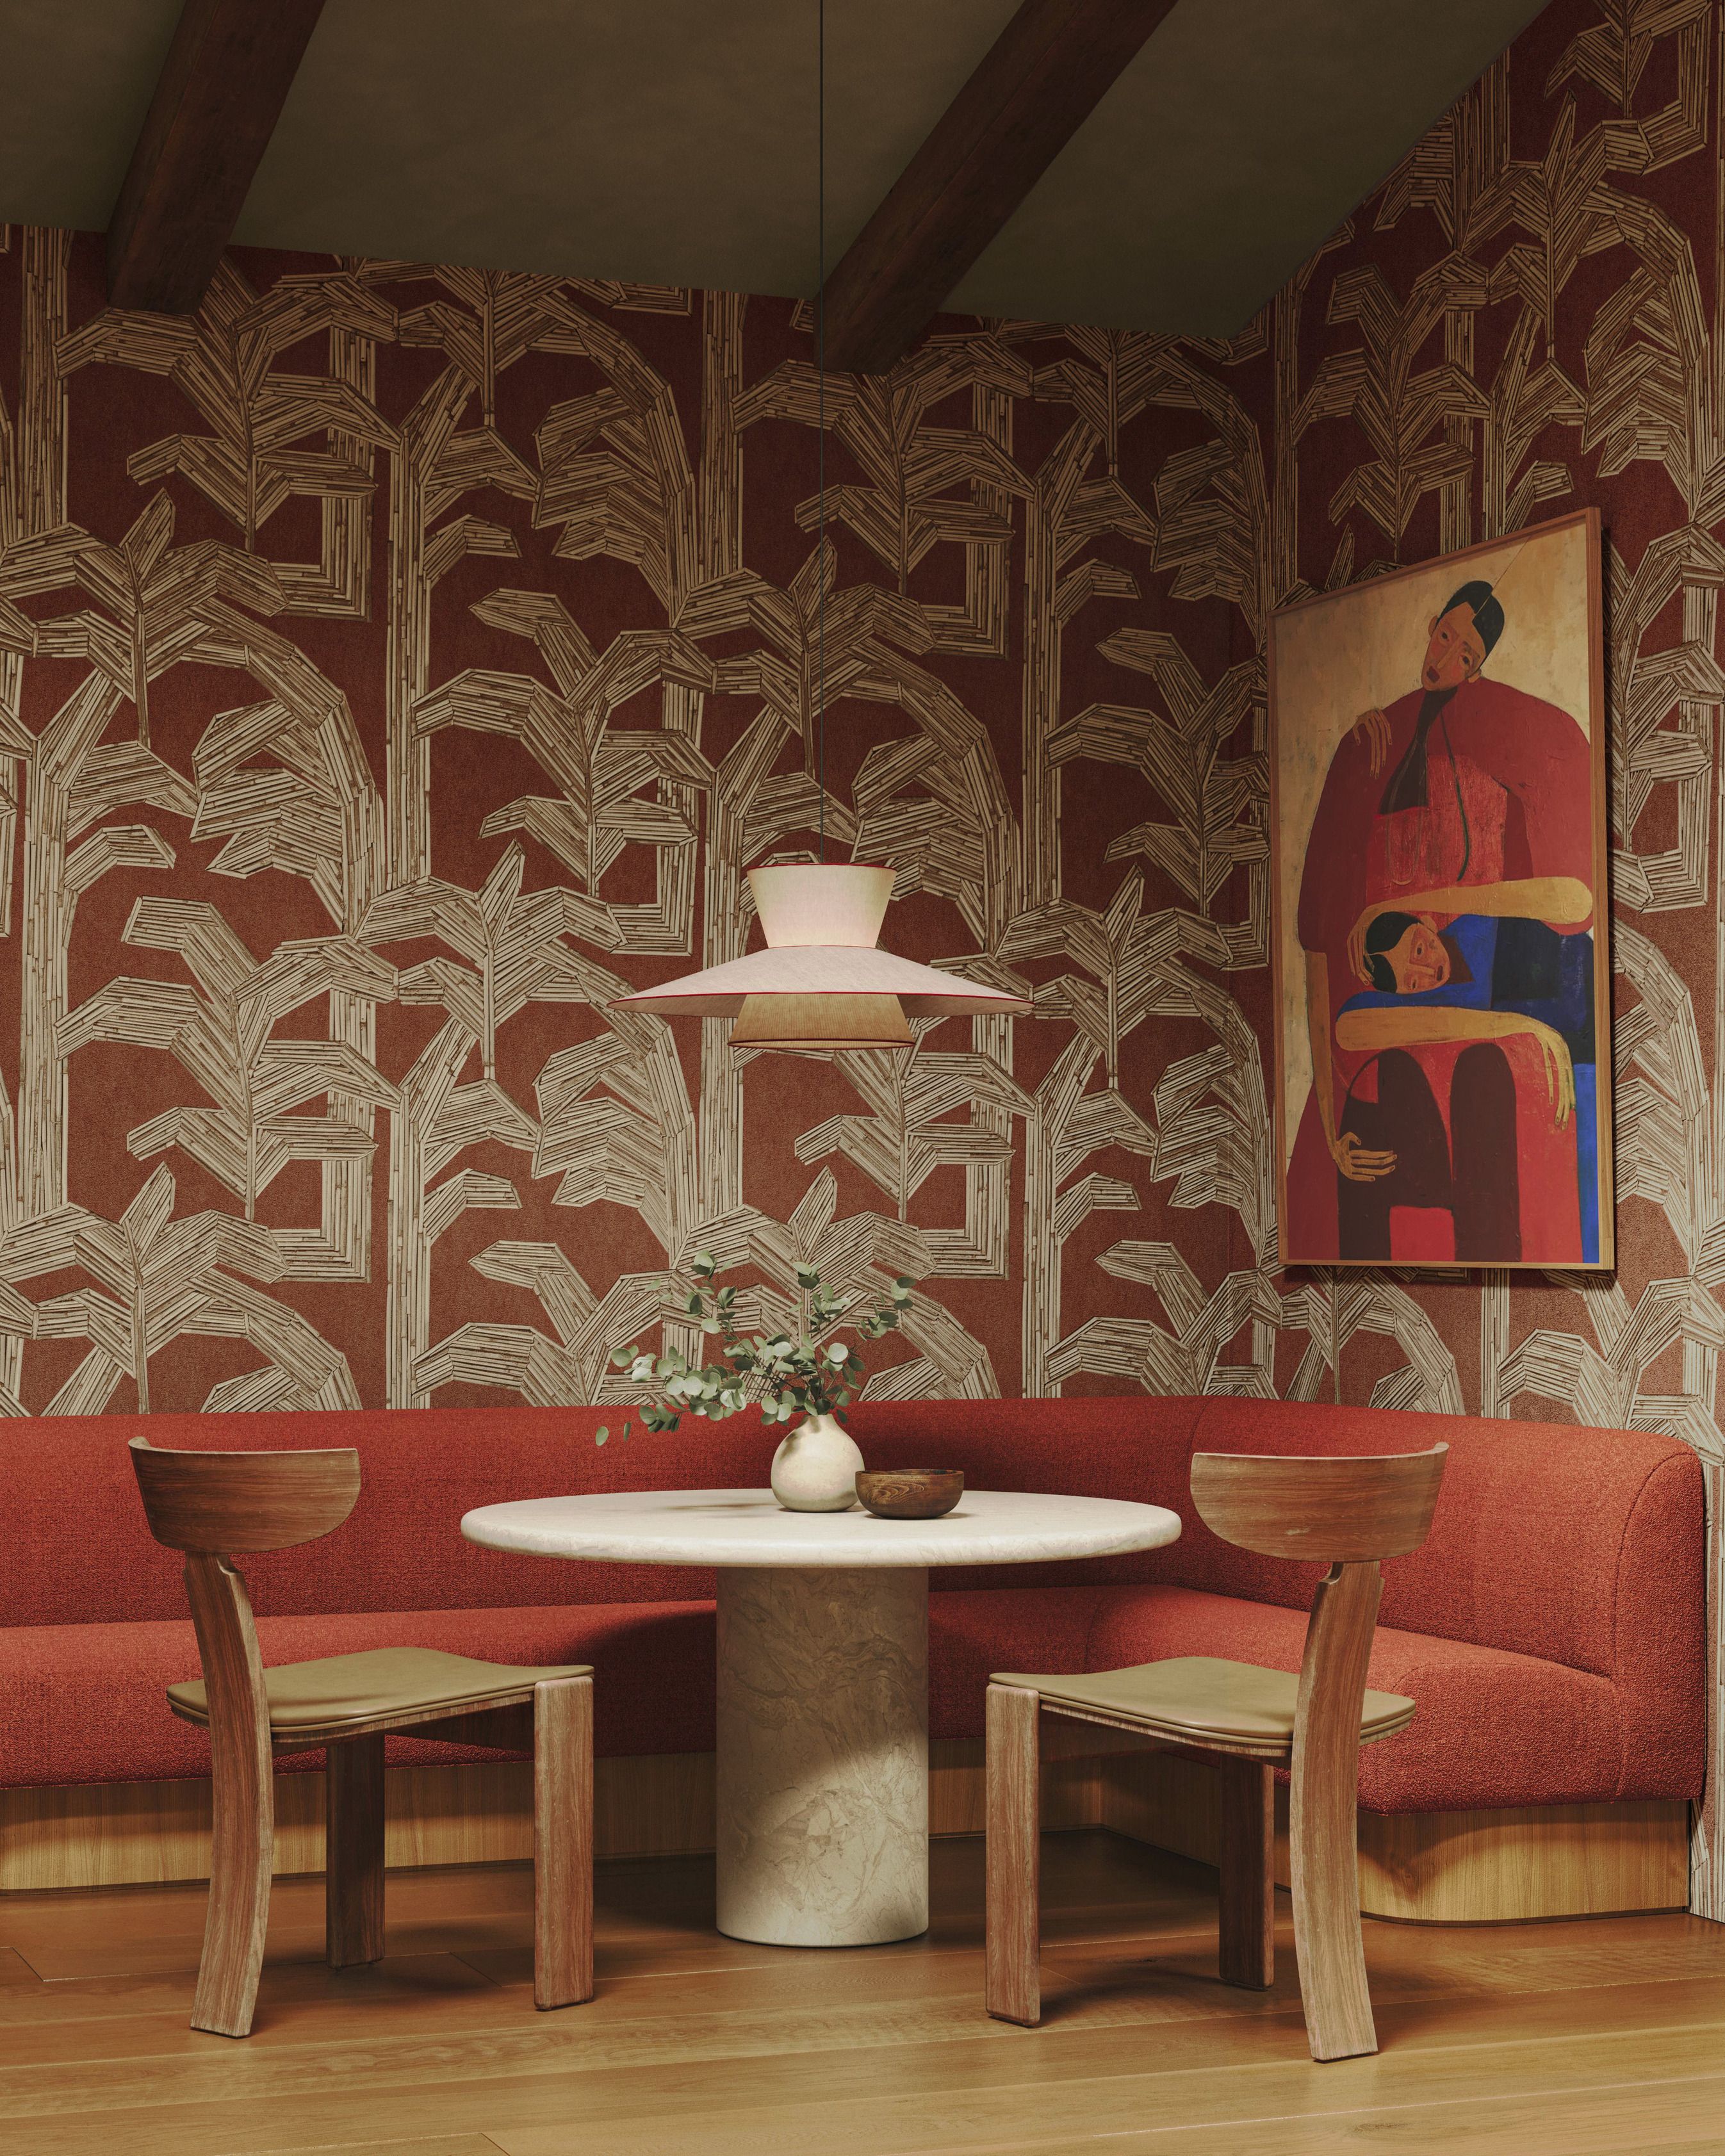 Coquette Fabric, Wallpaper and Home Decor